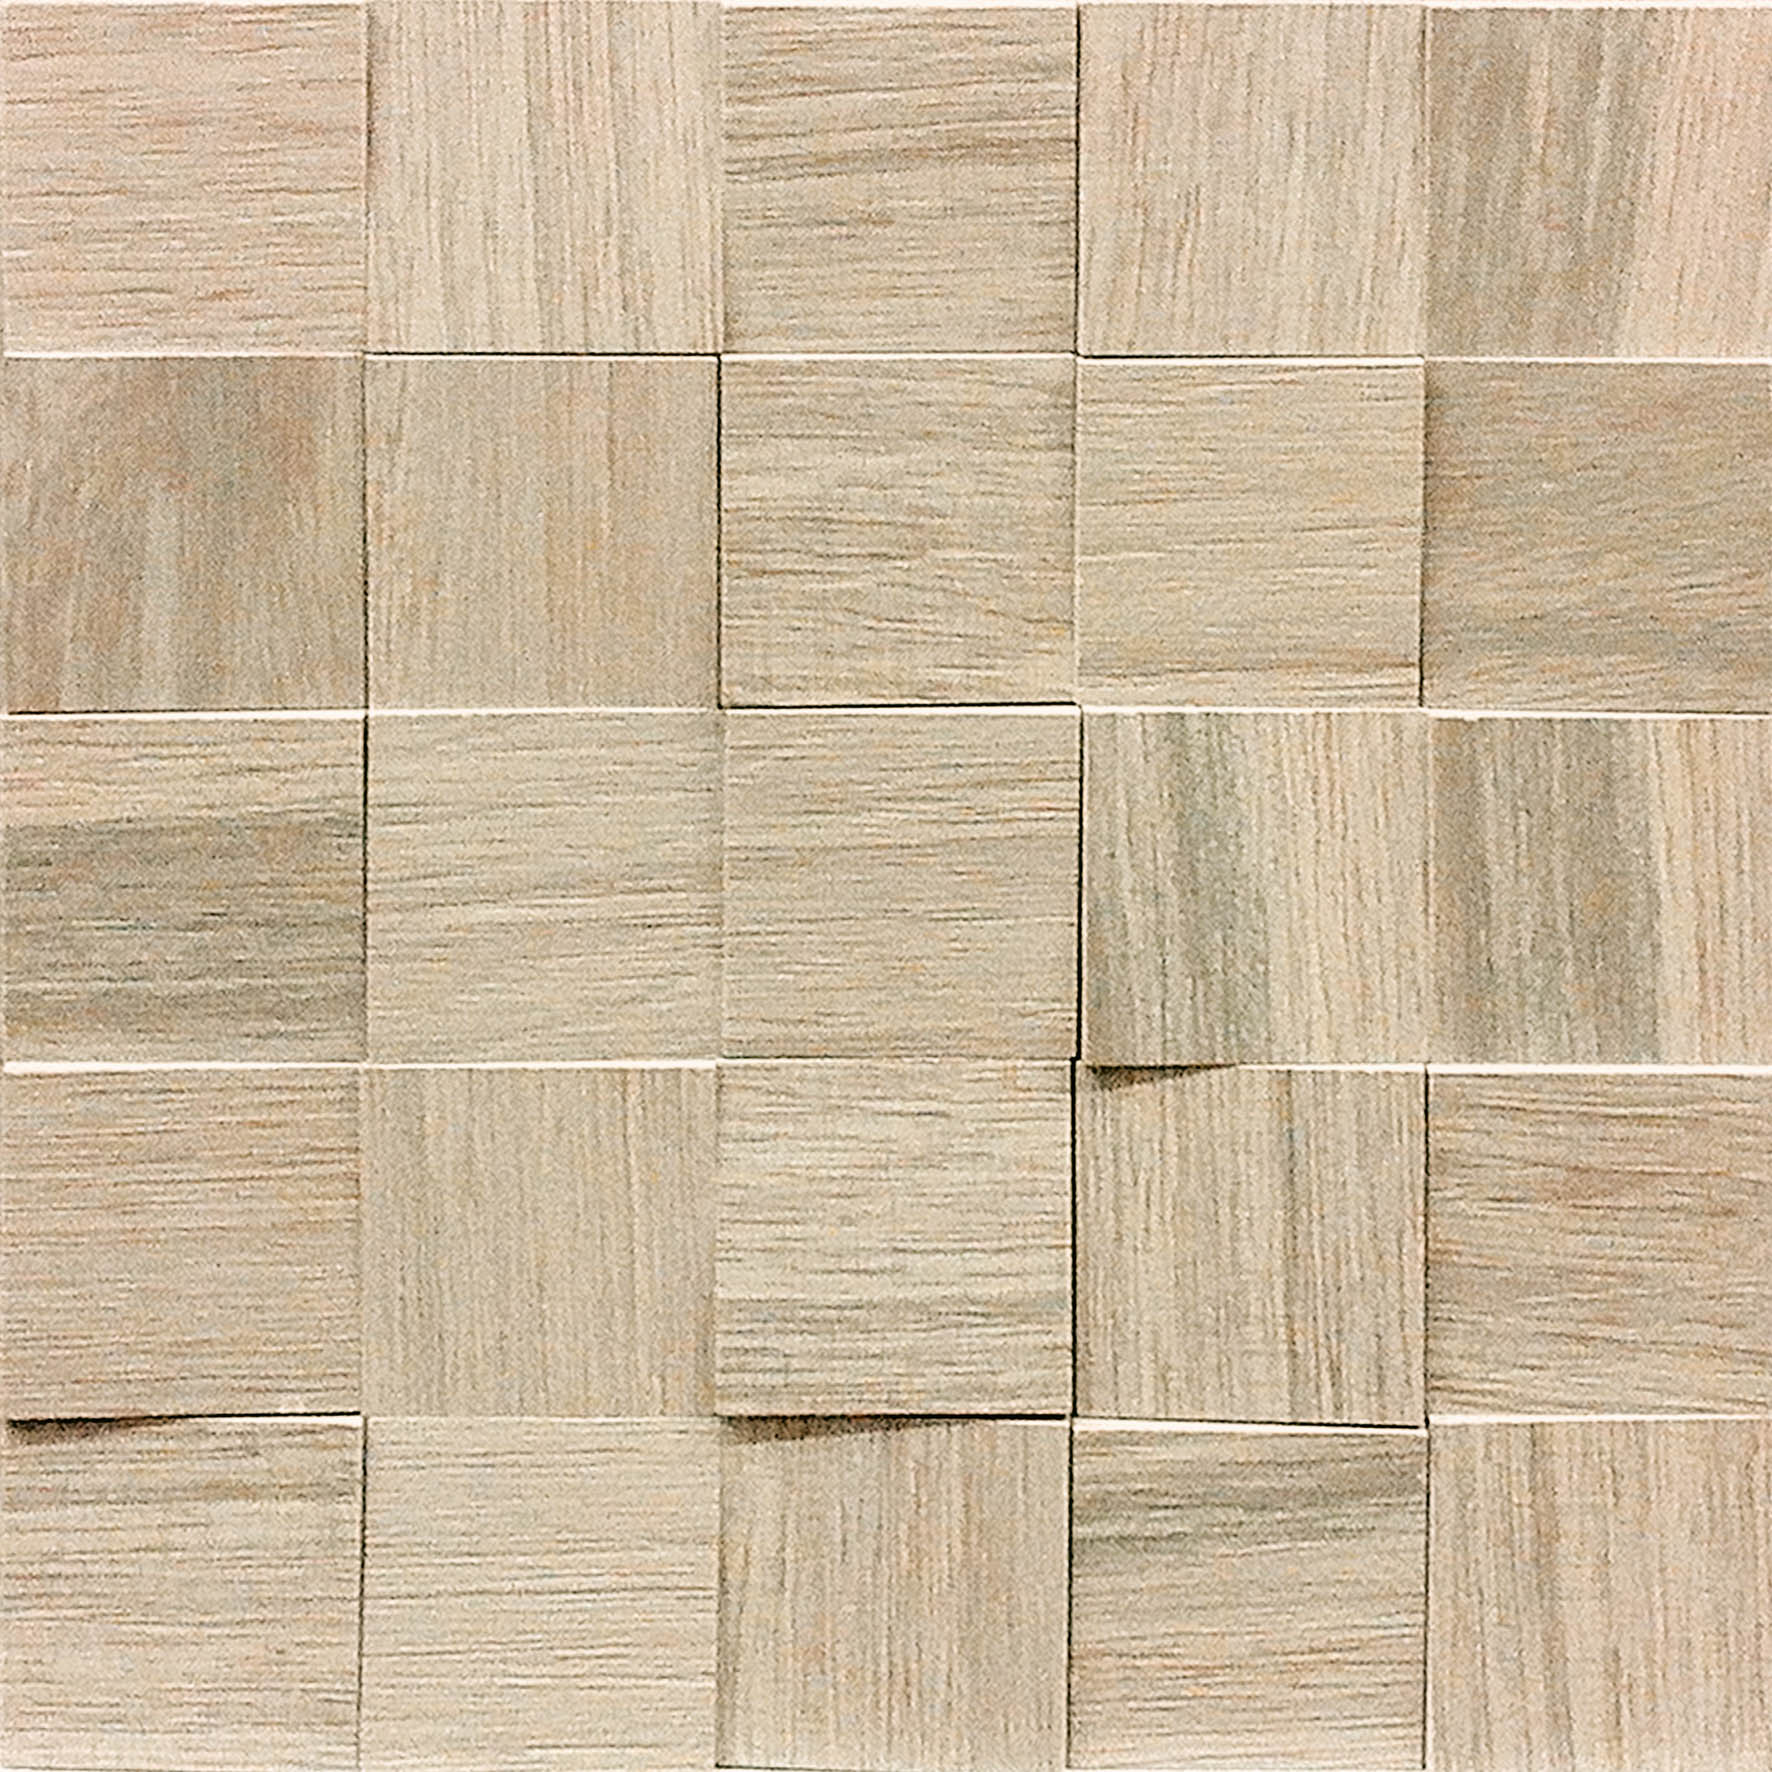 Casa Dolce Casa Wooden Tile Wooden Almond 2x2 3D Mosaic